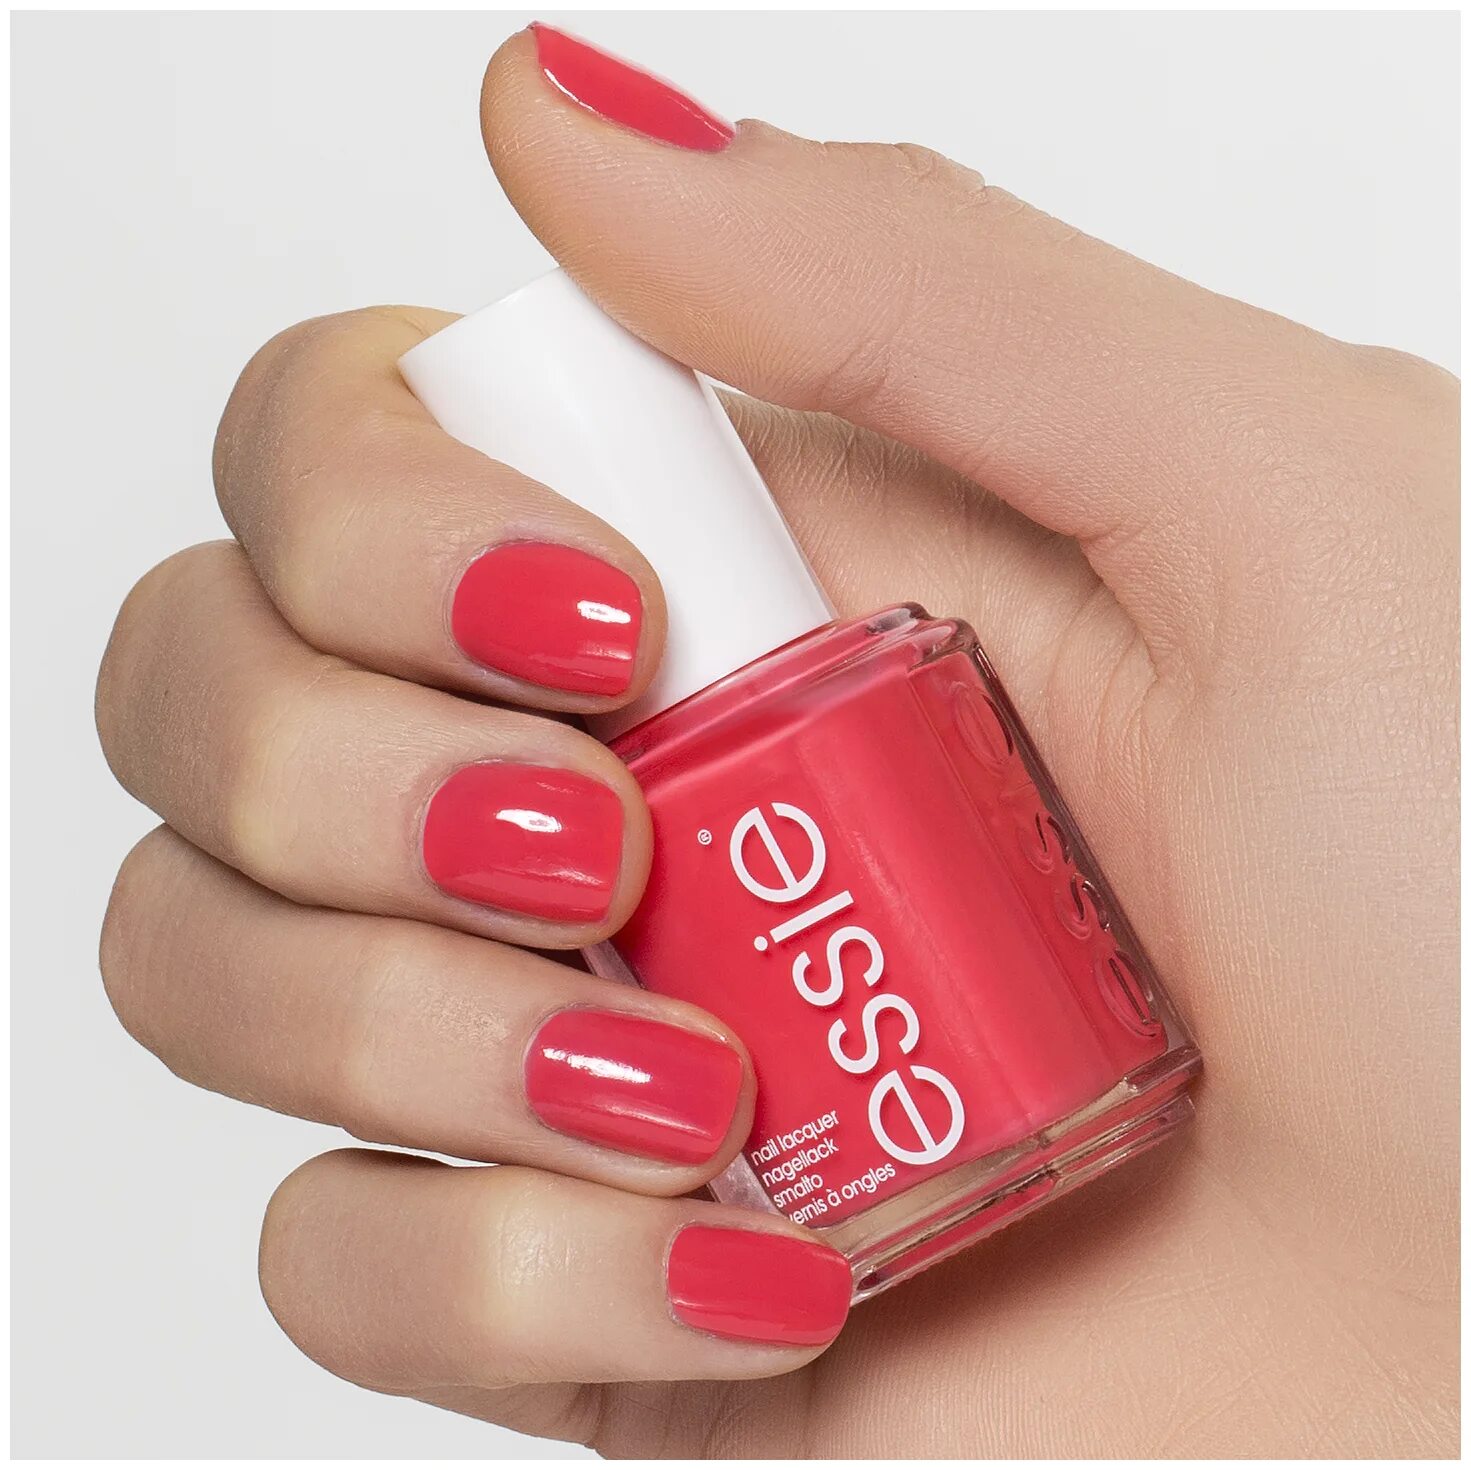 Лак для ногтей Essie 73. Лак Essie Nail Lacquer, 13.5 мл. Essie 73 милашка лак для ногтей. Essie лак для ногтей, оттенок 73 "милашка". Лак essie купить